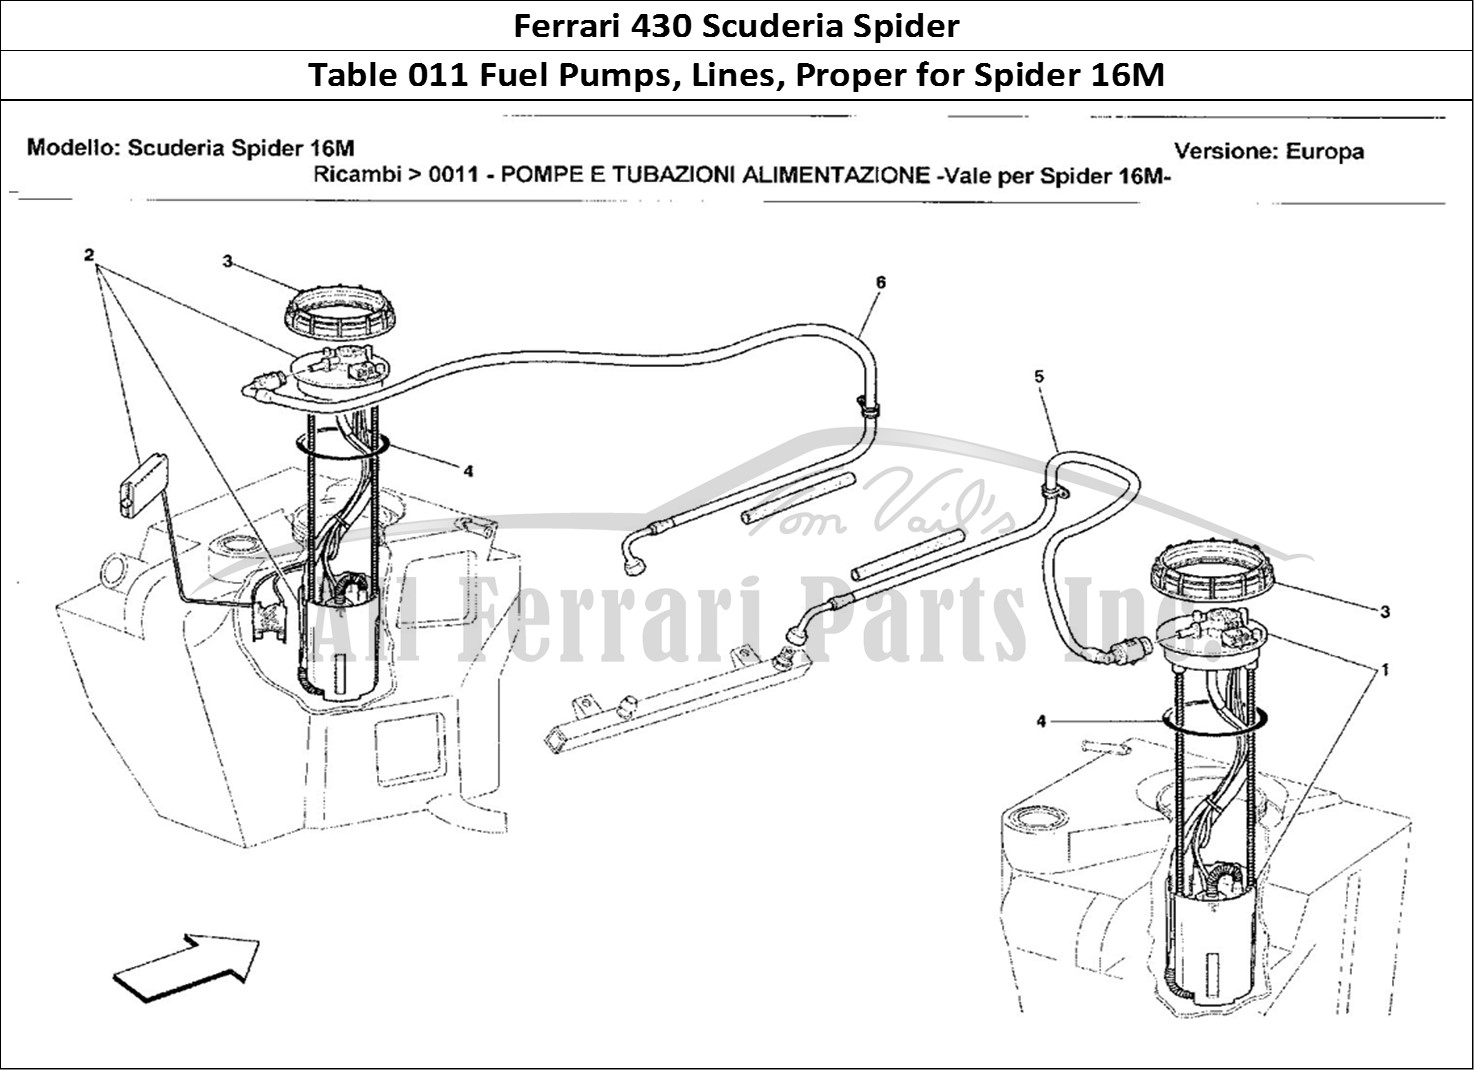 Ferrari Parts Ferrari 430 Scuderia Spider 16M Page 011 Pompe e Tubazioni Aliment